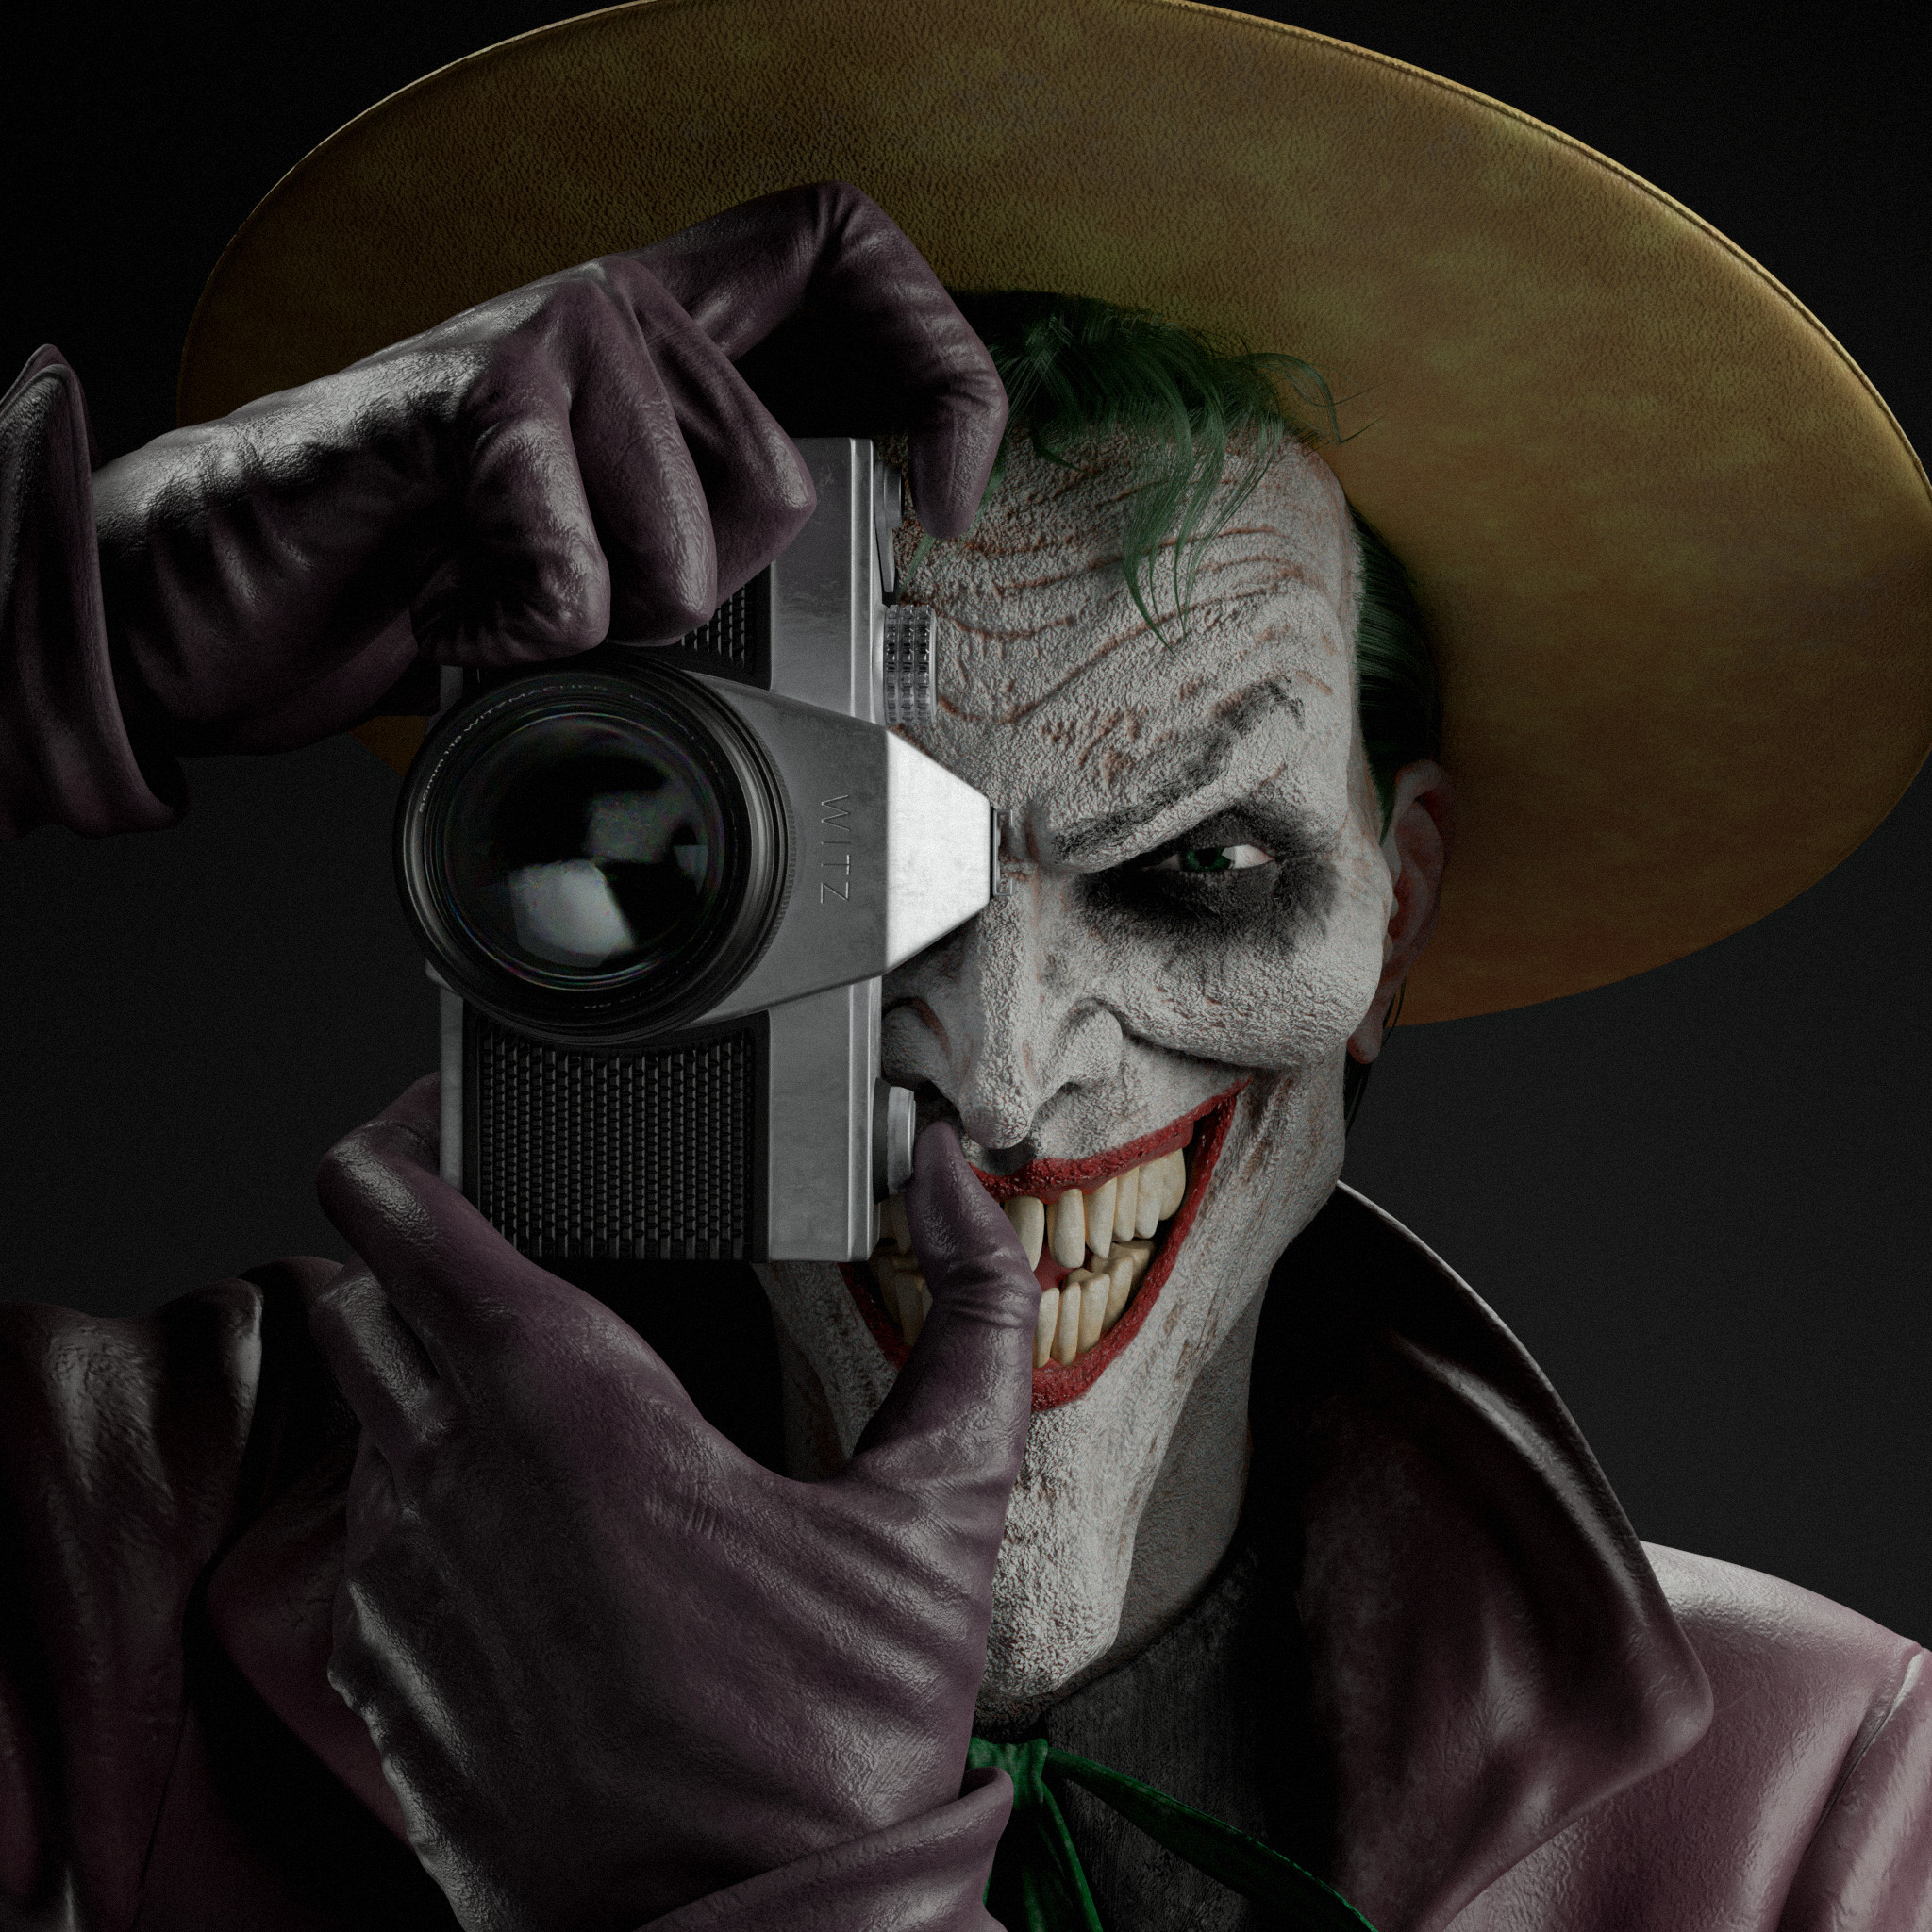 ArtStation - Joker - The killing joke